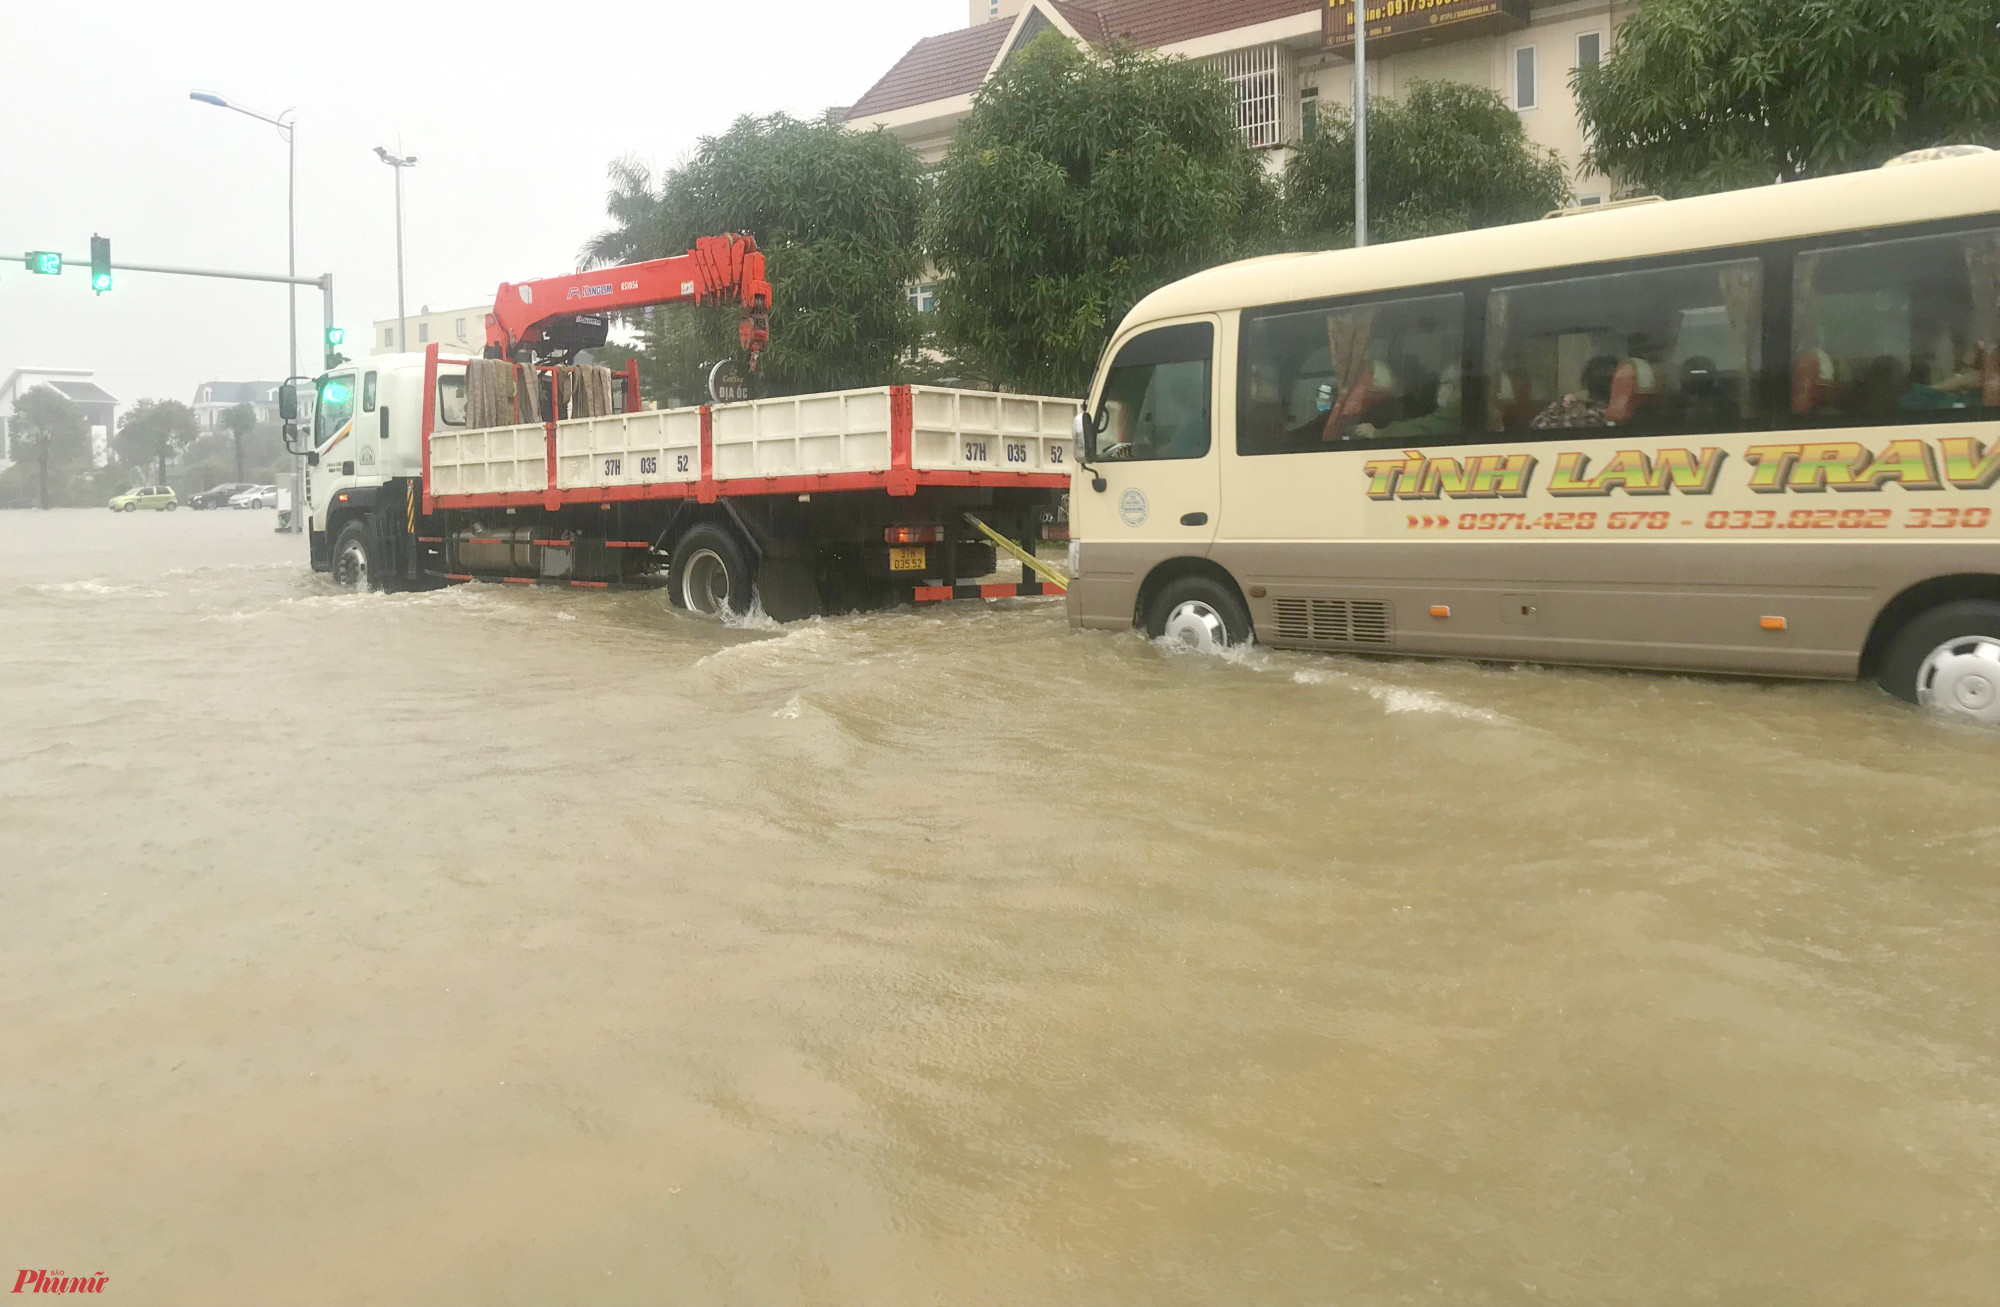 Đường 72m (xã Nghi Phú, thành phố Vinh) bị ngập sâu hơn nửa mét khiến nhiều phương tiện lưu thông qua khu vực này chết máy giữa đường - Ảnh: Phan Ngọc